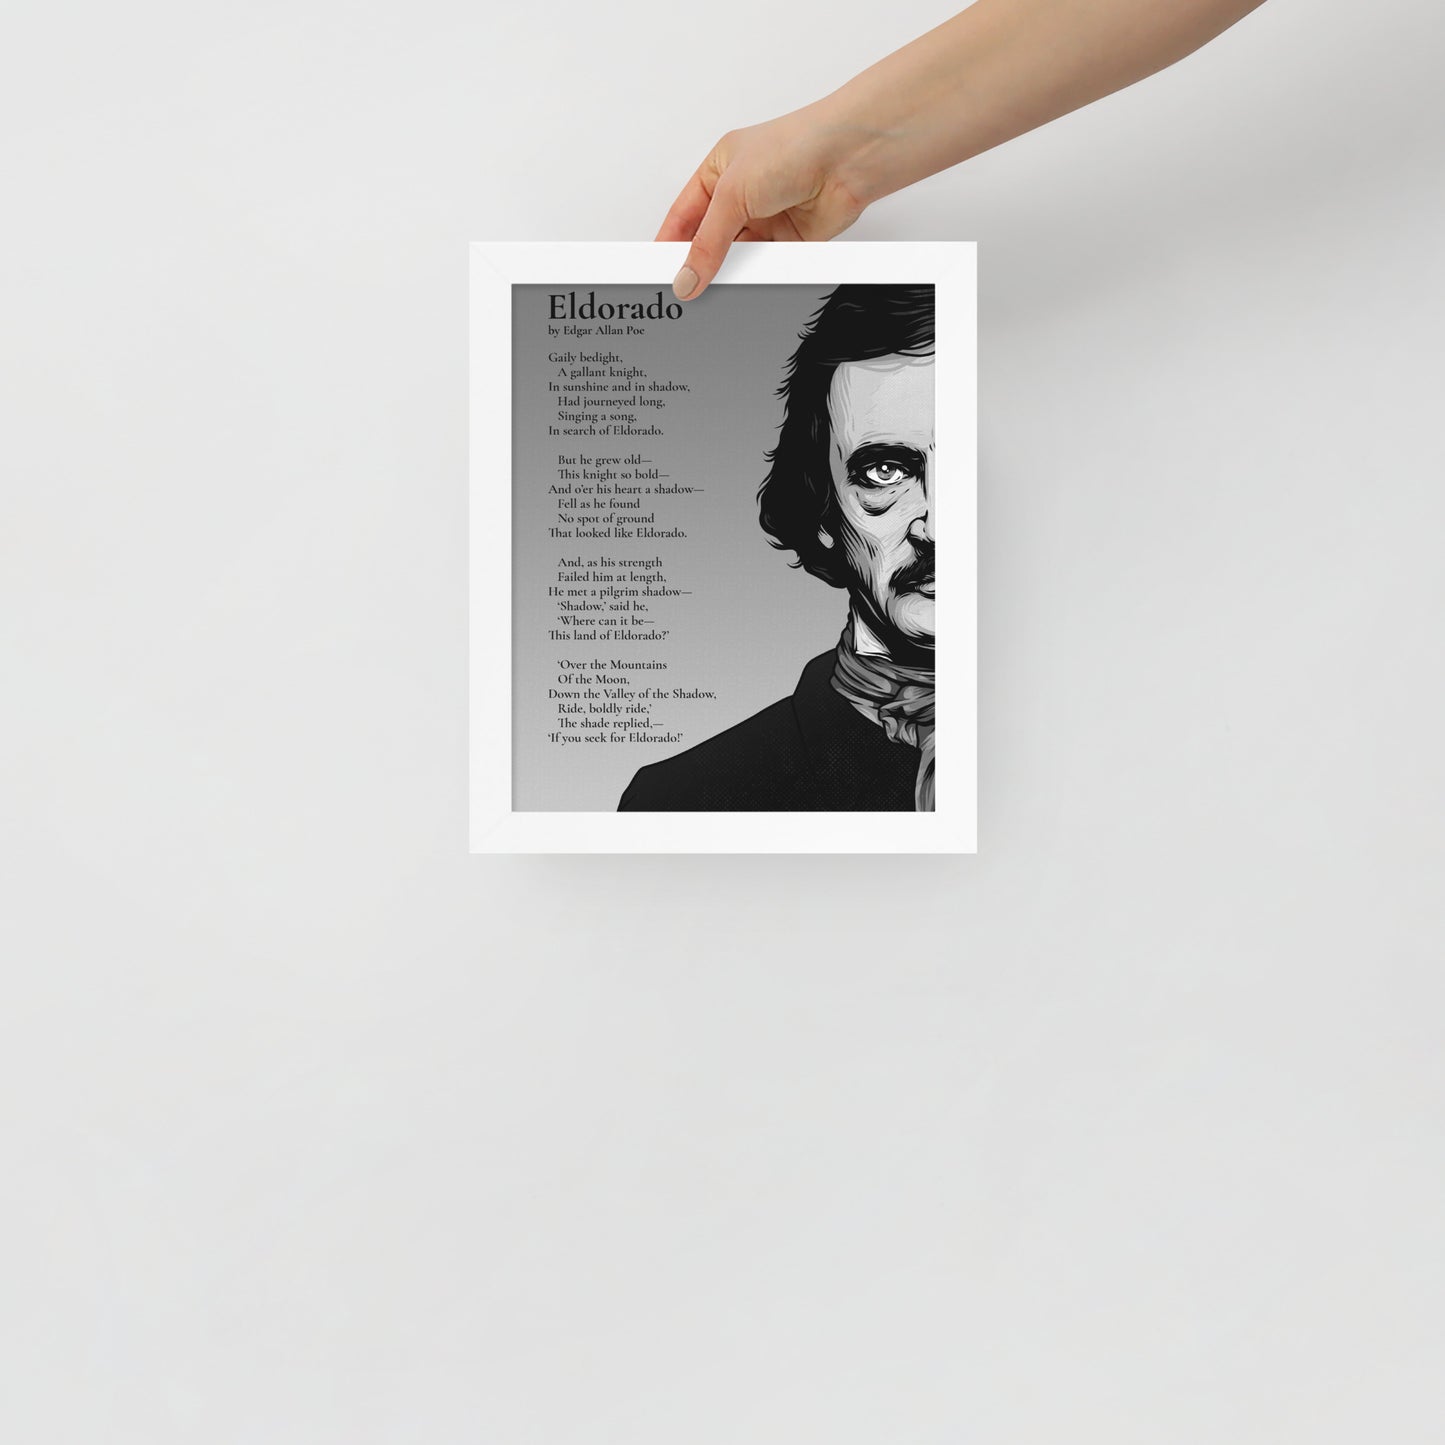 Edgar Allan Poe's 'Eldorado' Framed Matted Poster - 8 x 10 White Frame